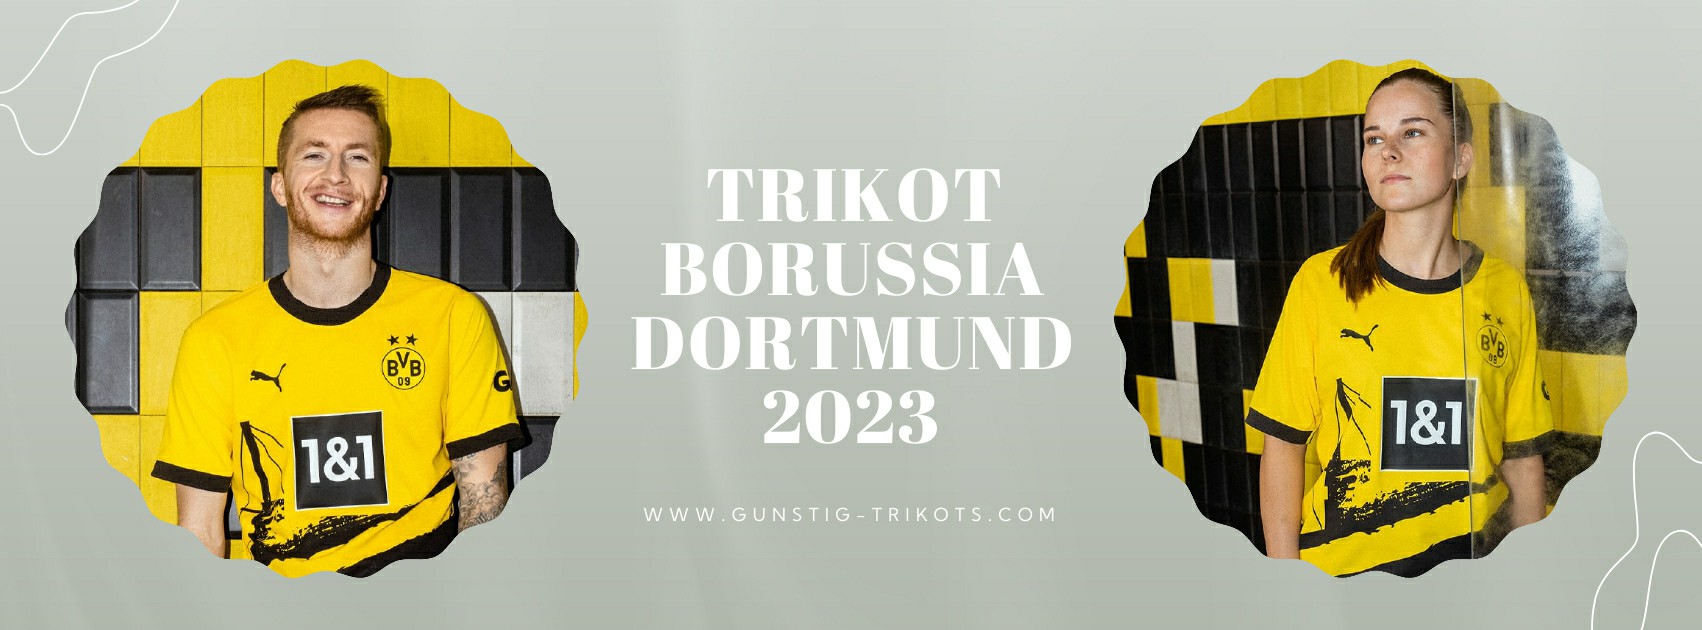 Borussia Dortmund Trikot 2023-2024